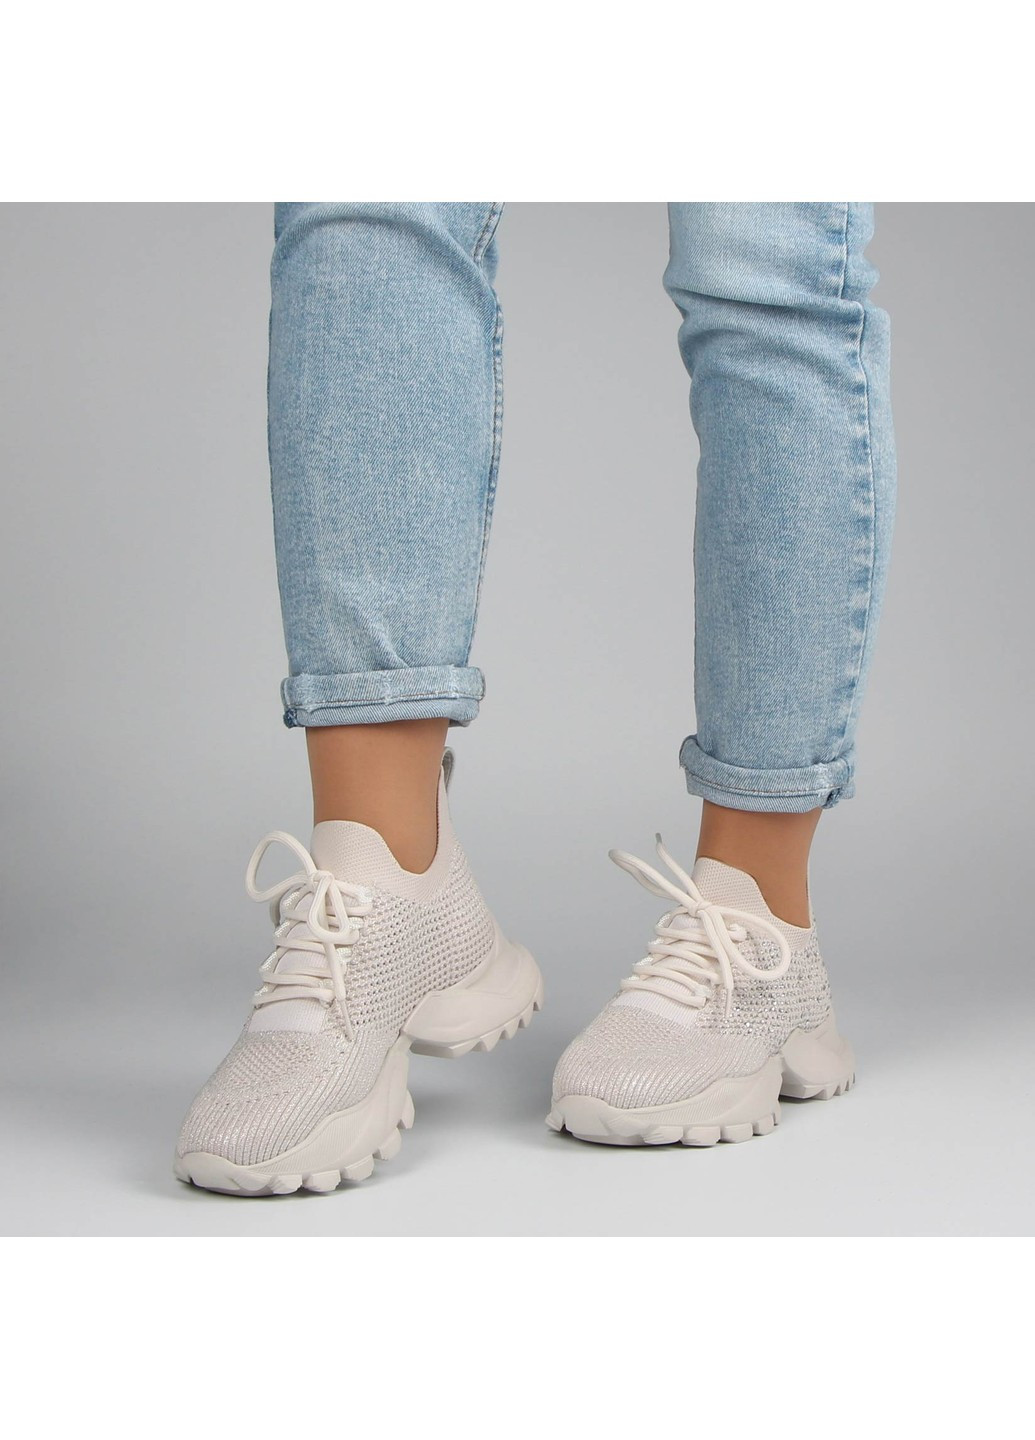 Белые демисезонные женские кроссовки 196821 Buts